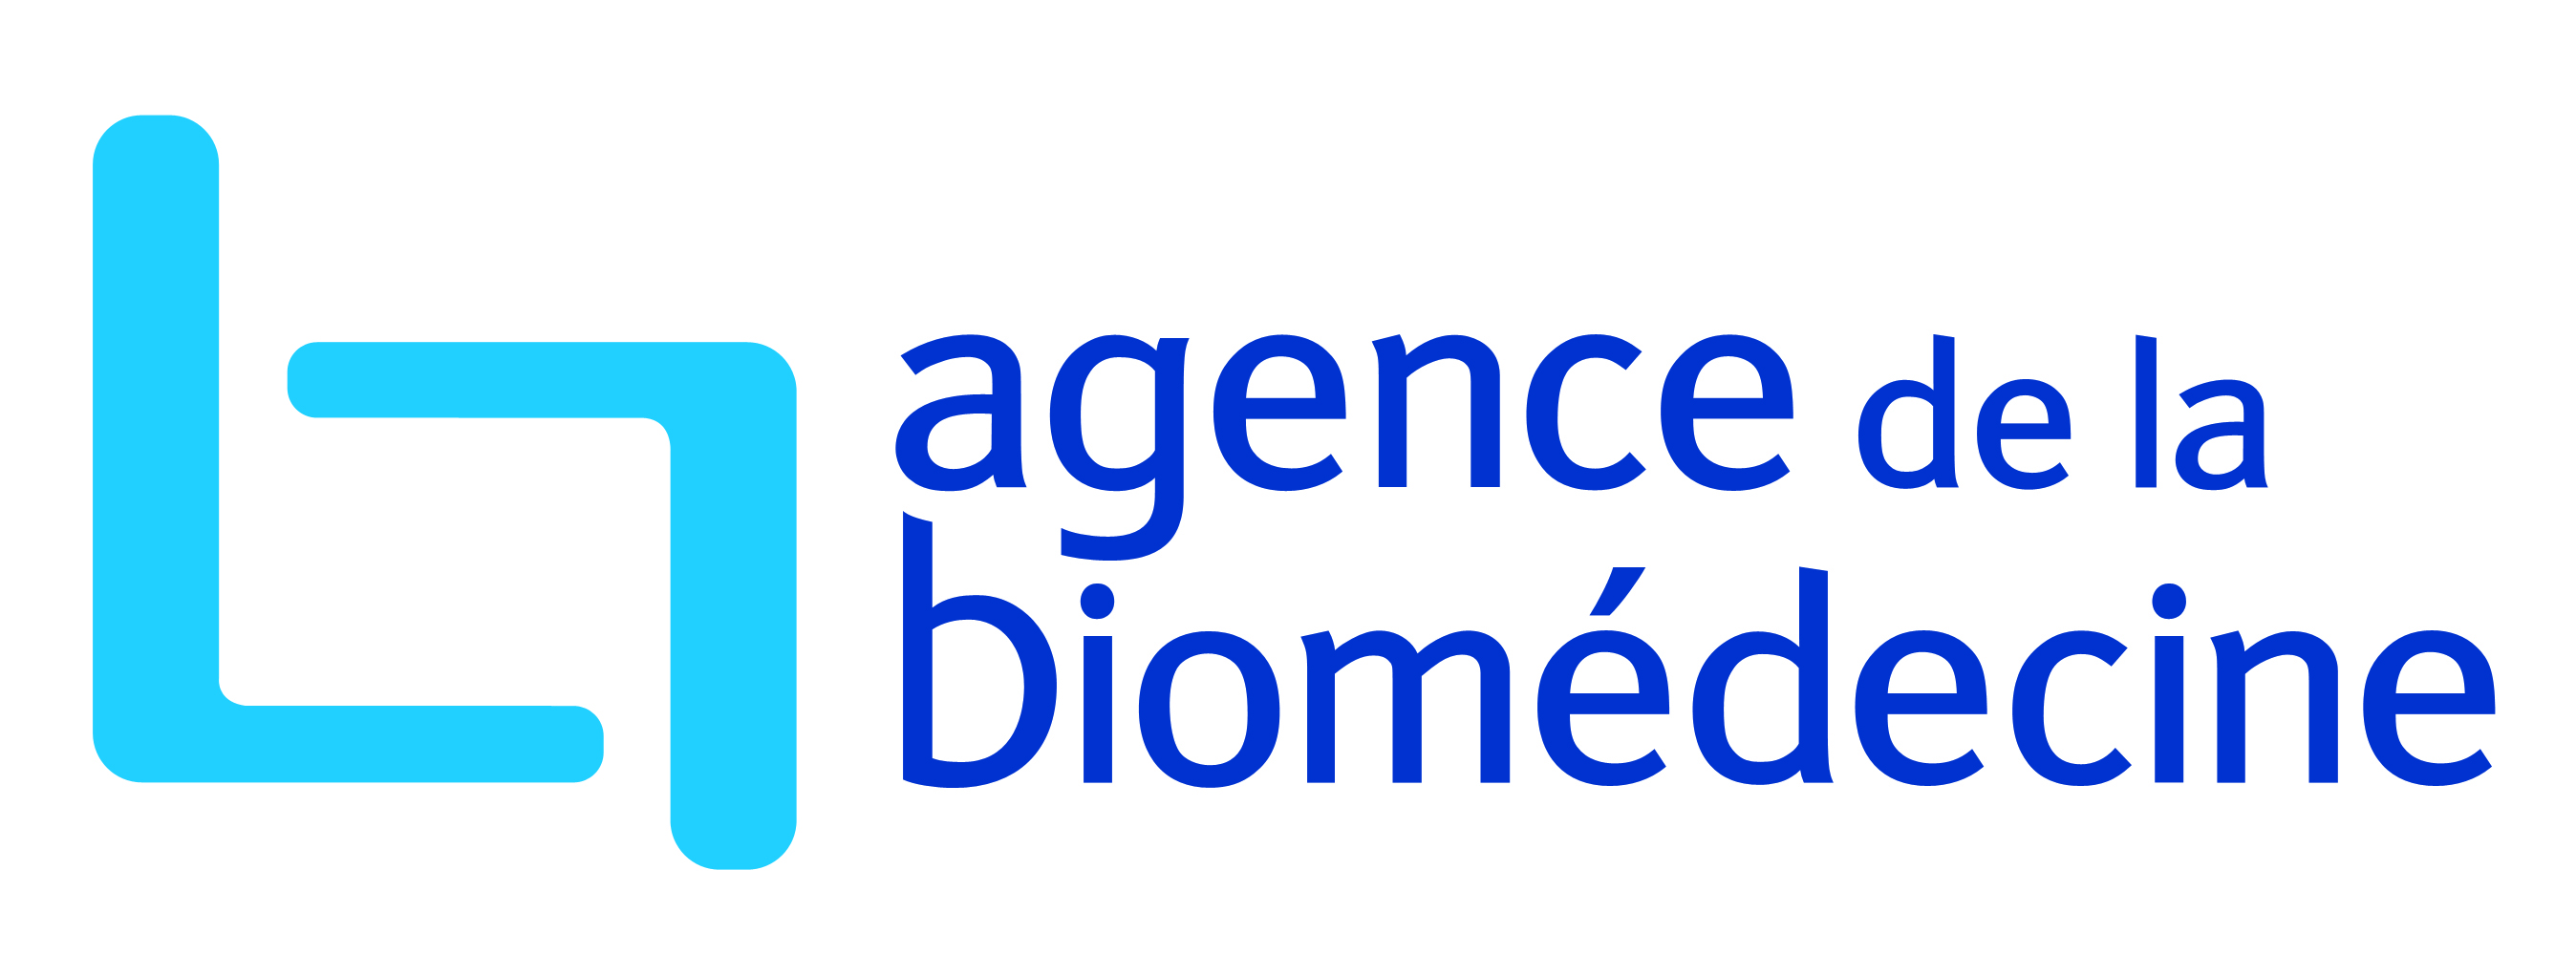 logo agence de la biomdecine 2012